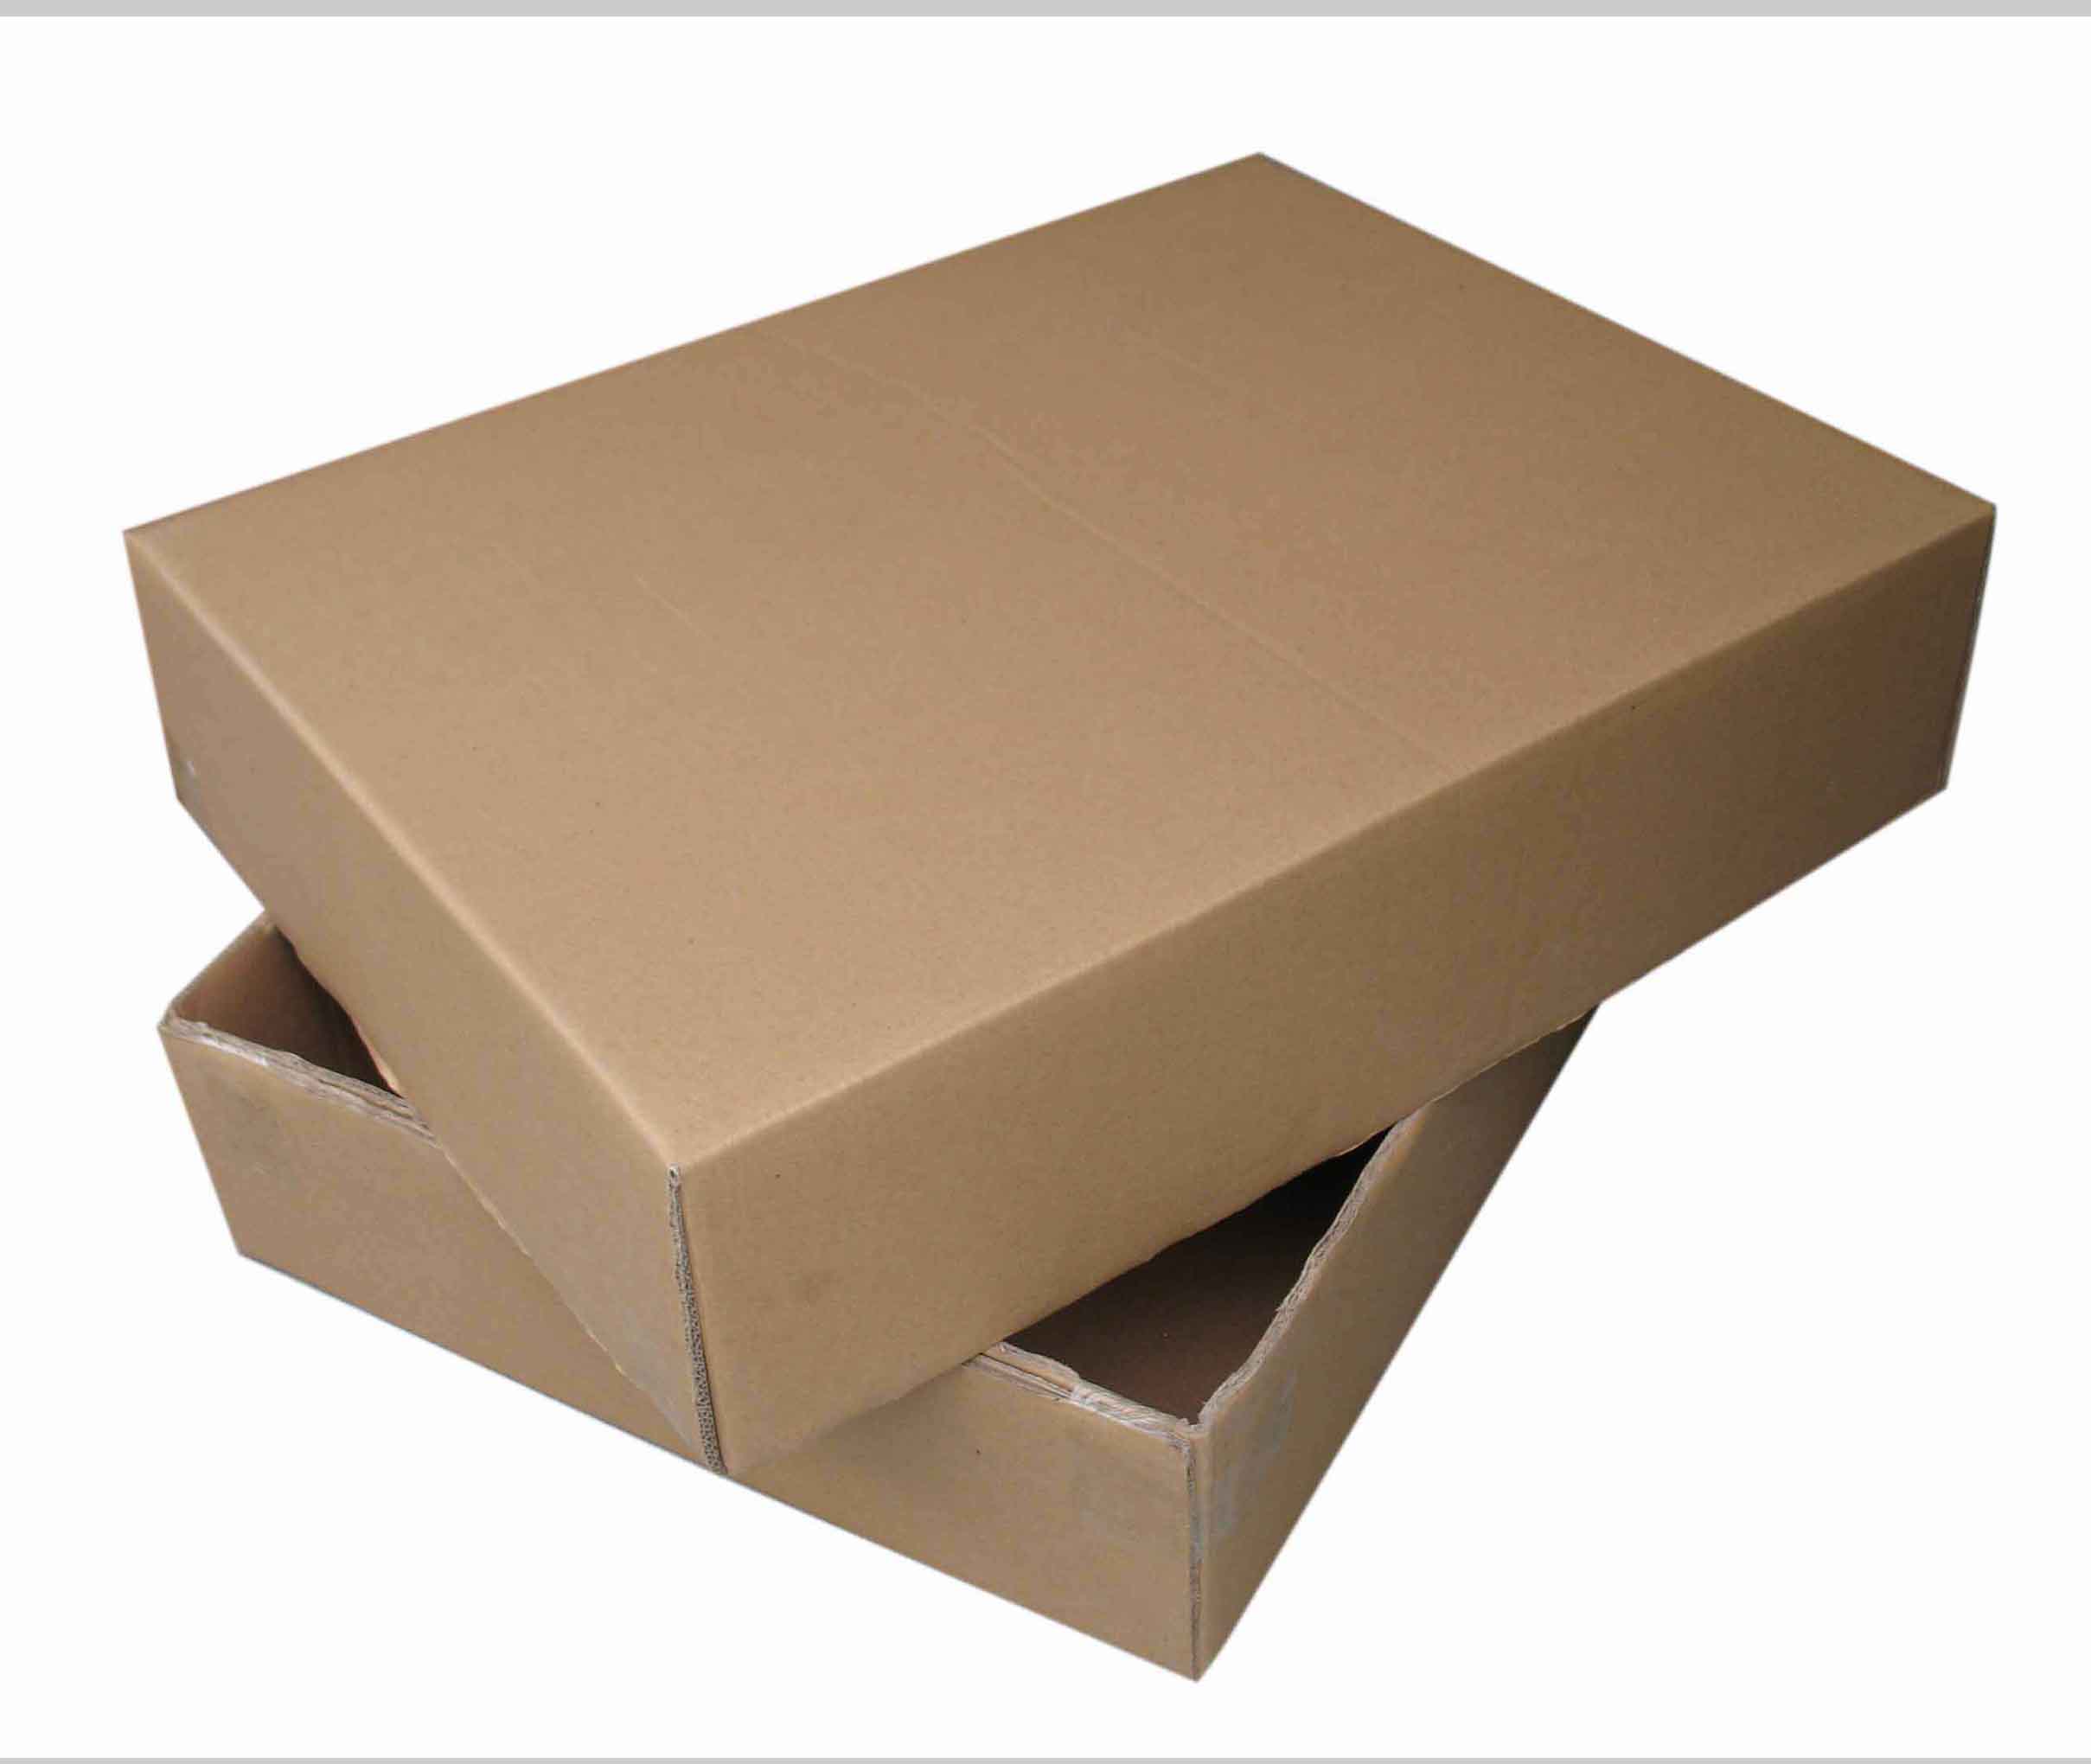 Купить коробки в иваново. Картонные коробки. Упаковочная коробка. Коробки картонные упаковочные. Коробка упаковочная картонная.